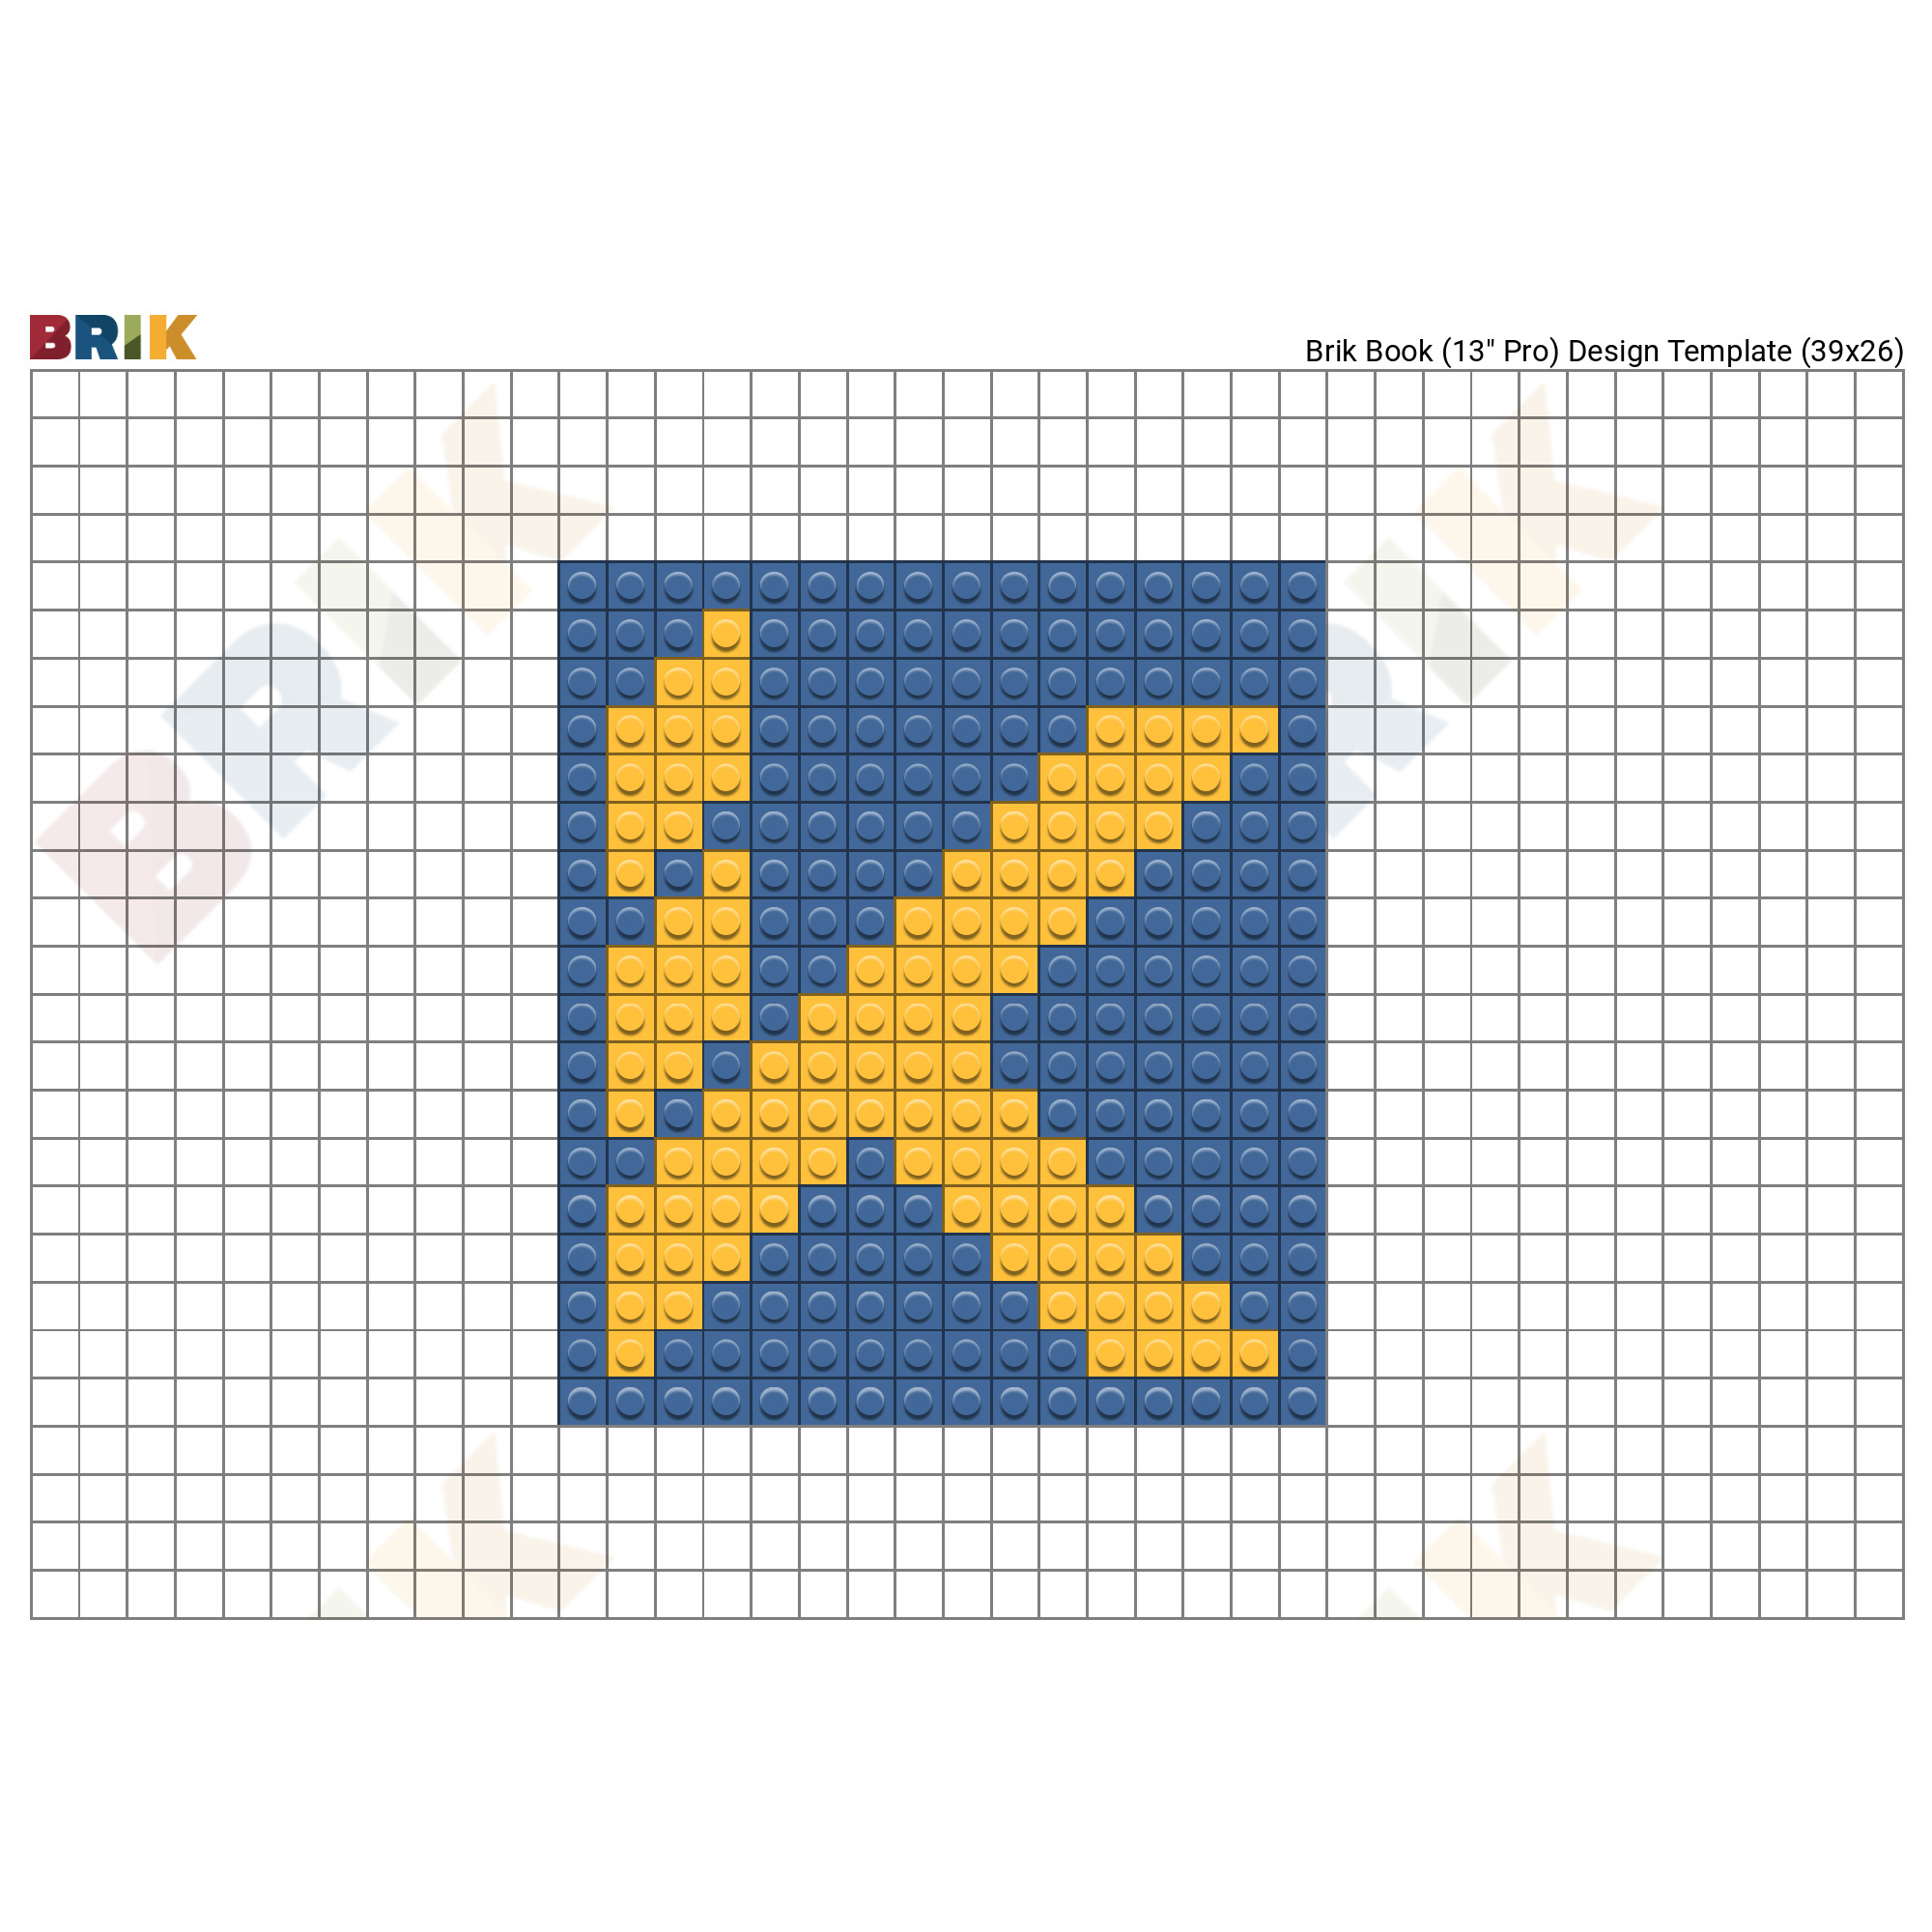 Klay Thompson Pixel Art – BRIK